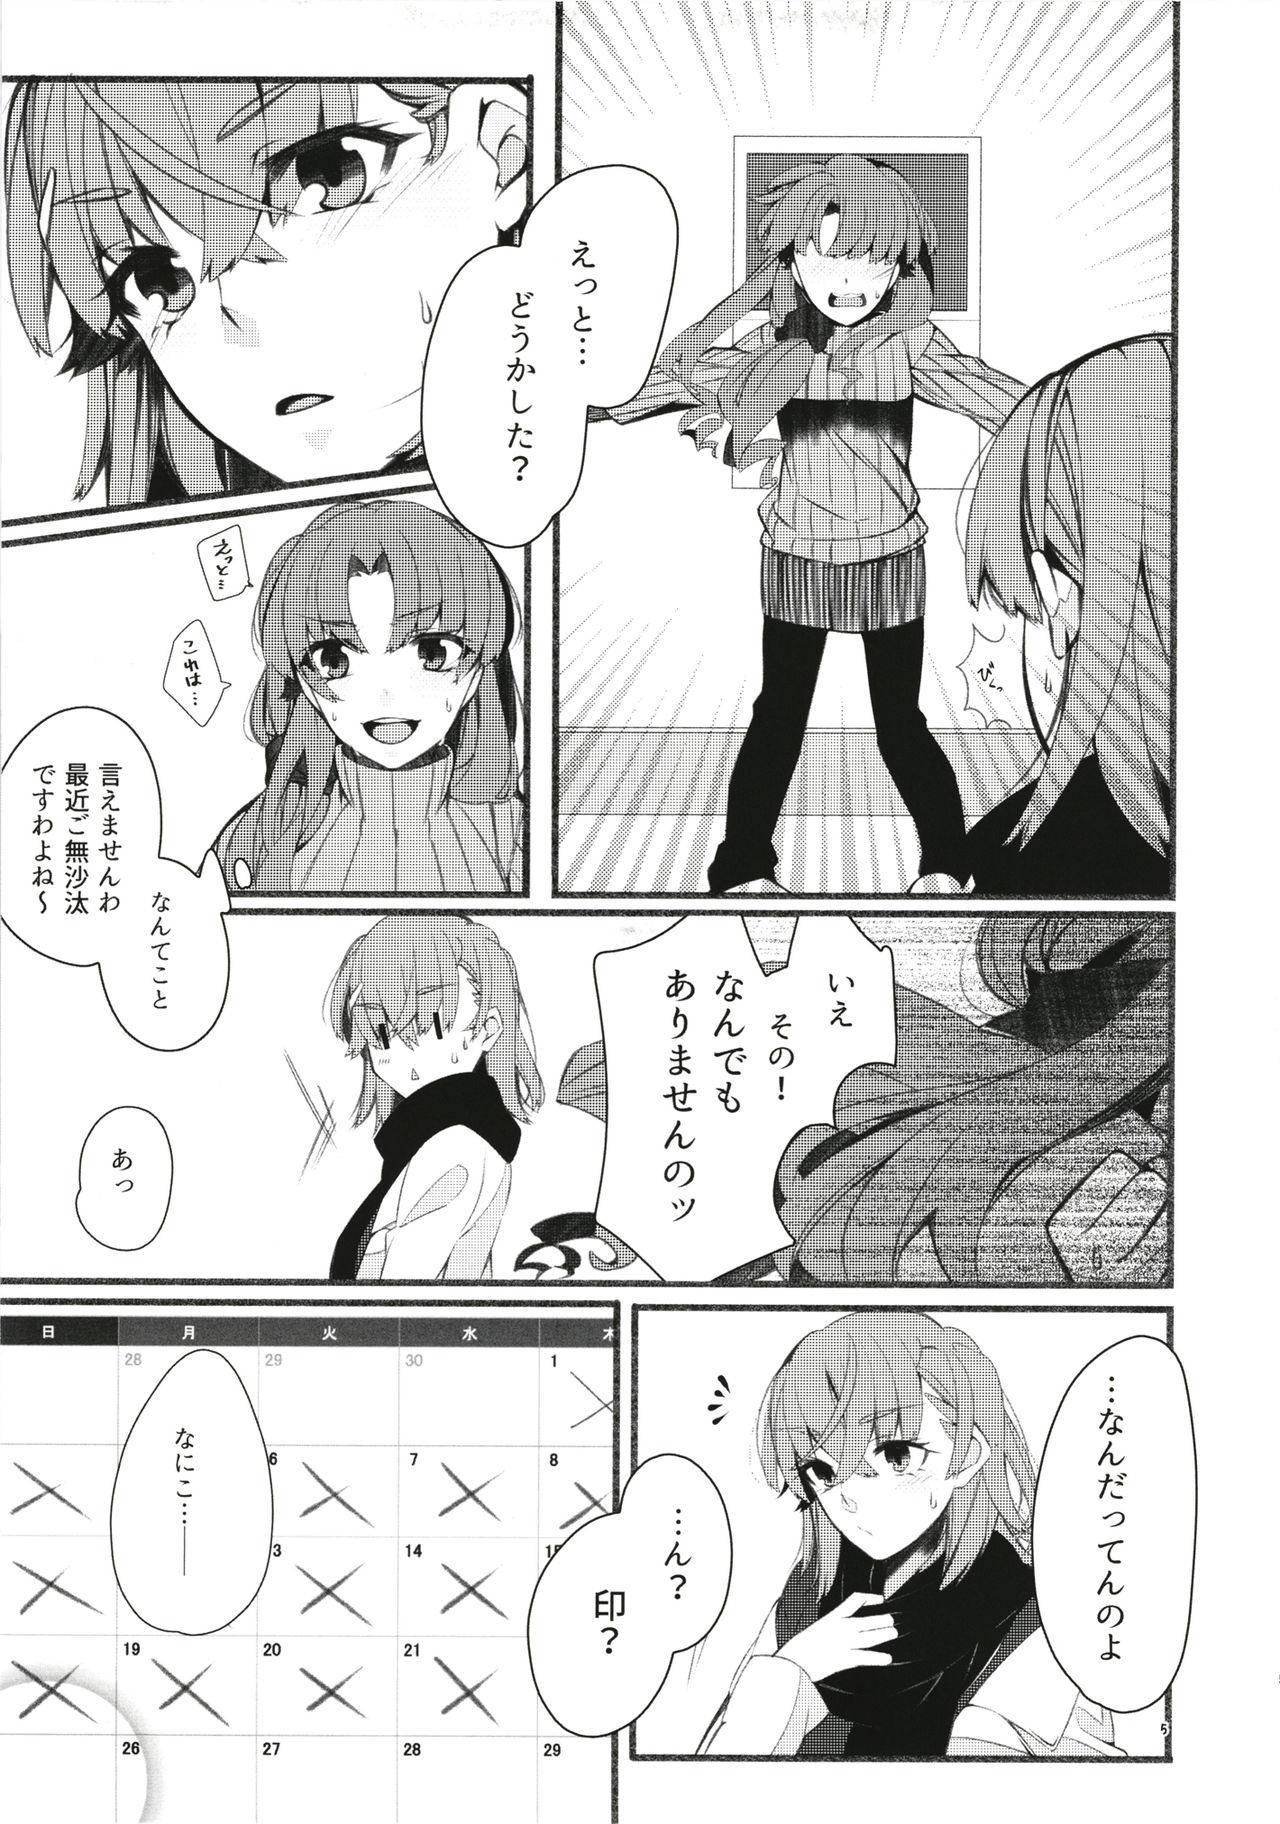 Step Toutotsu Desu ga!? 3 - Toaru kagaku no railgun Boy Girl - Page 5